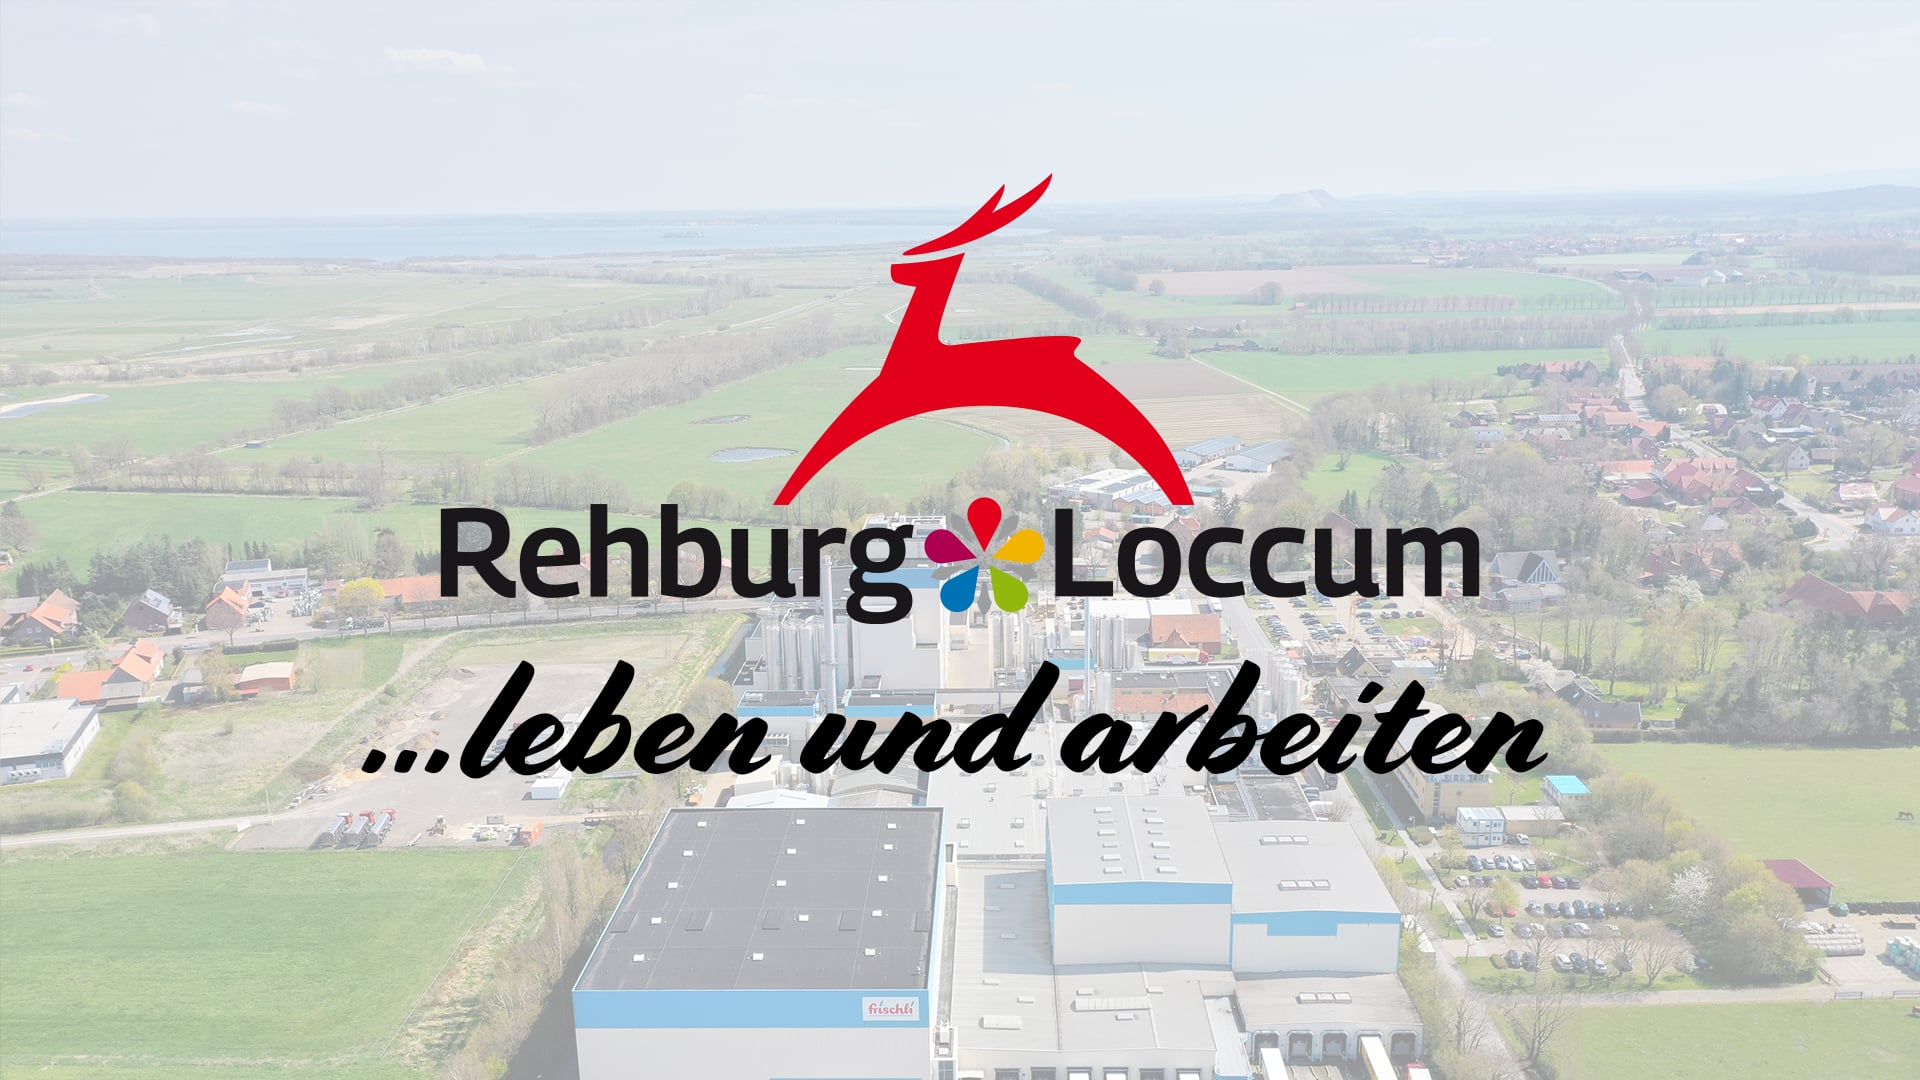 Leben und Wirtschaften in Rehburg - Loccum